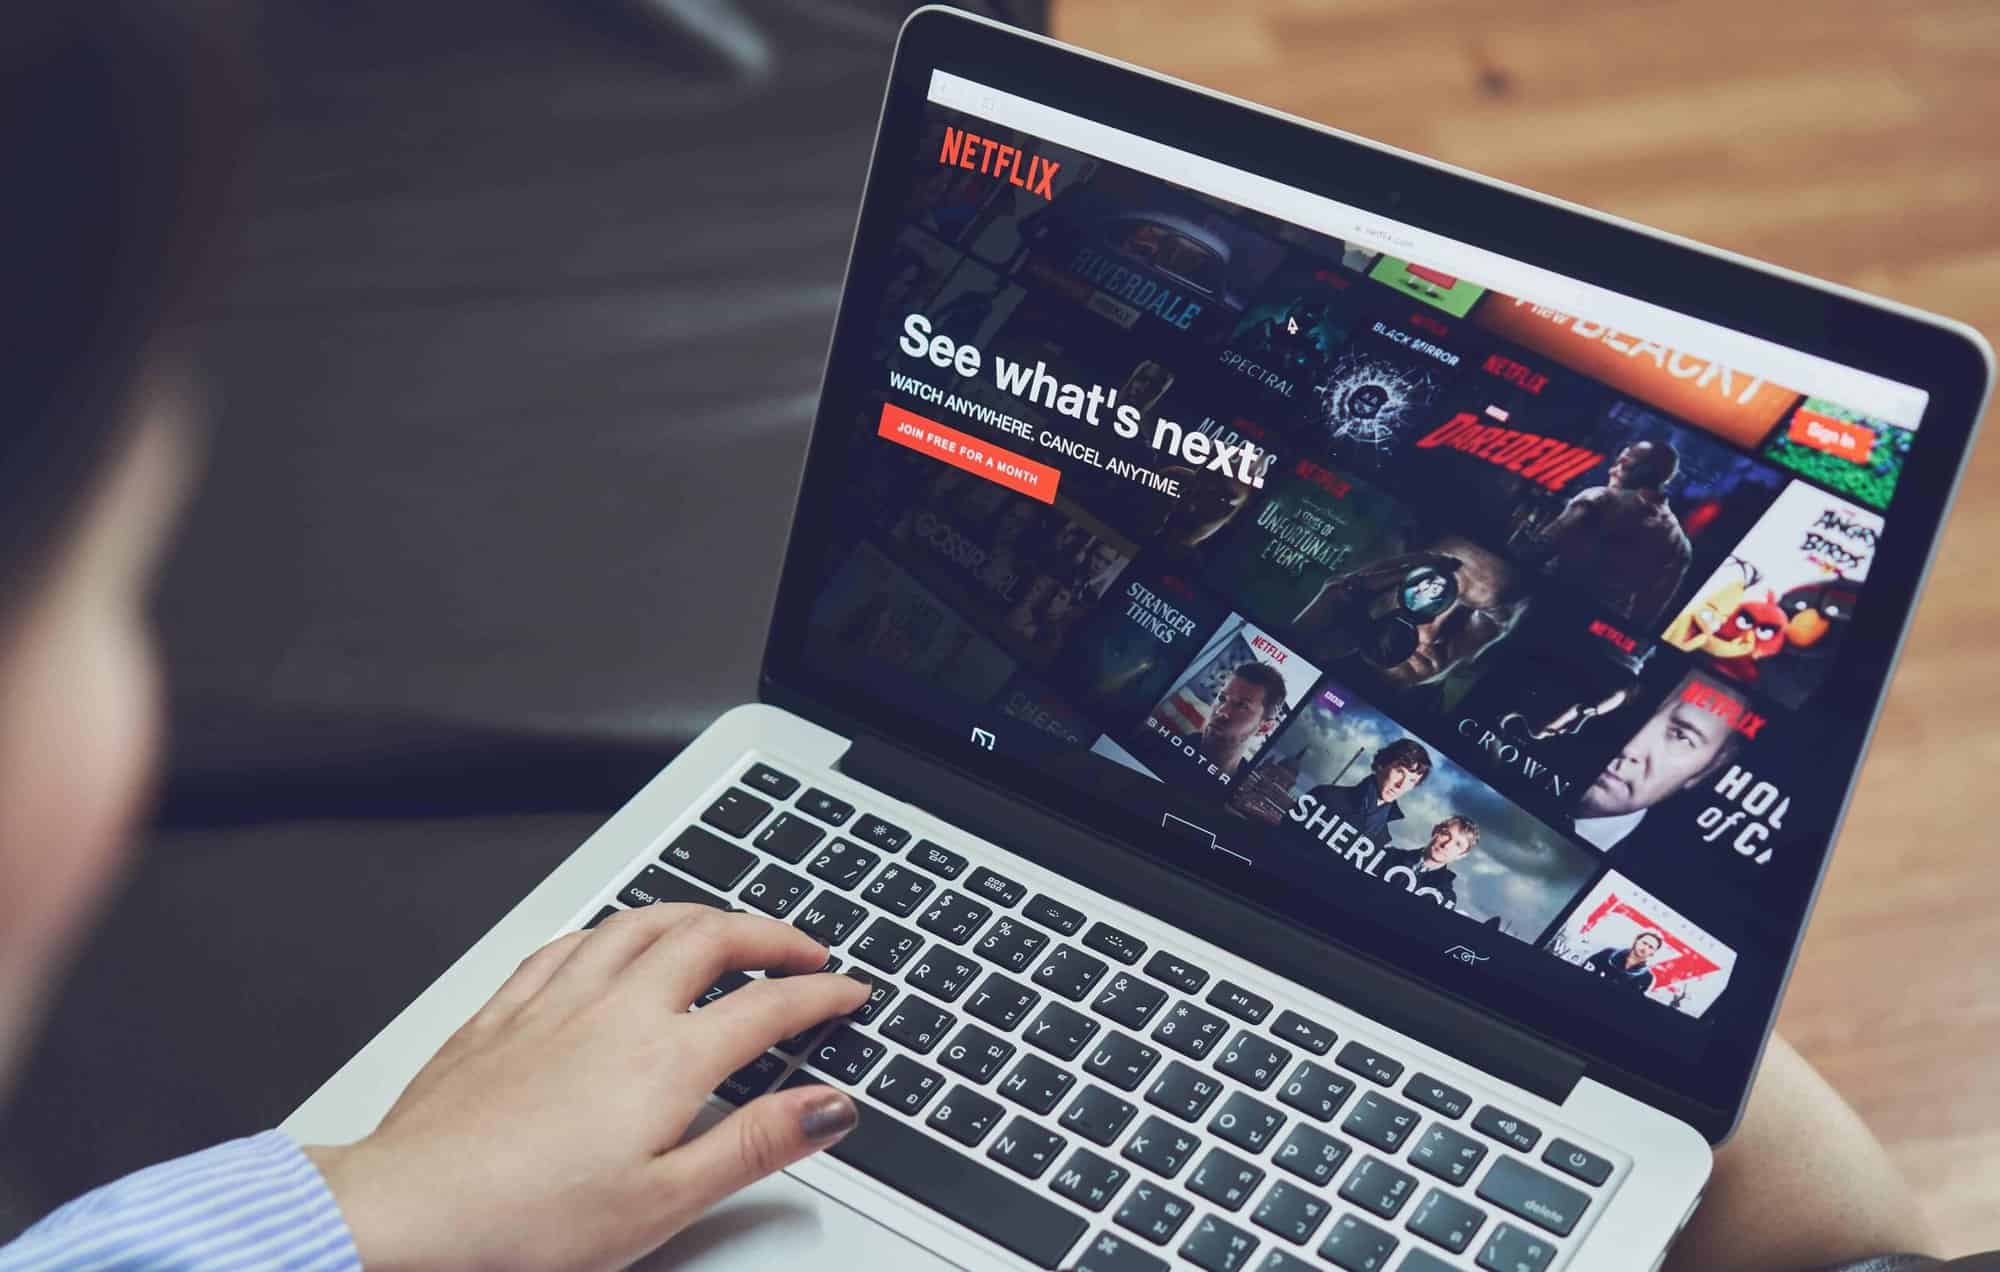 Netflix grátis: plataforma lança site com filmes e séries